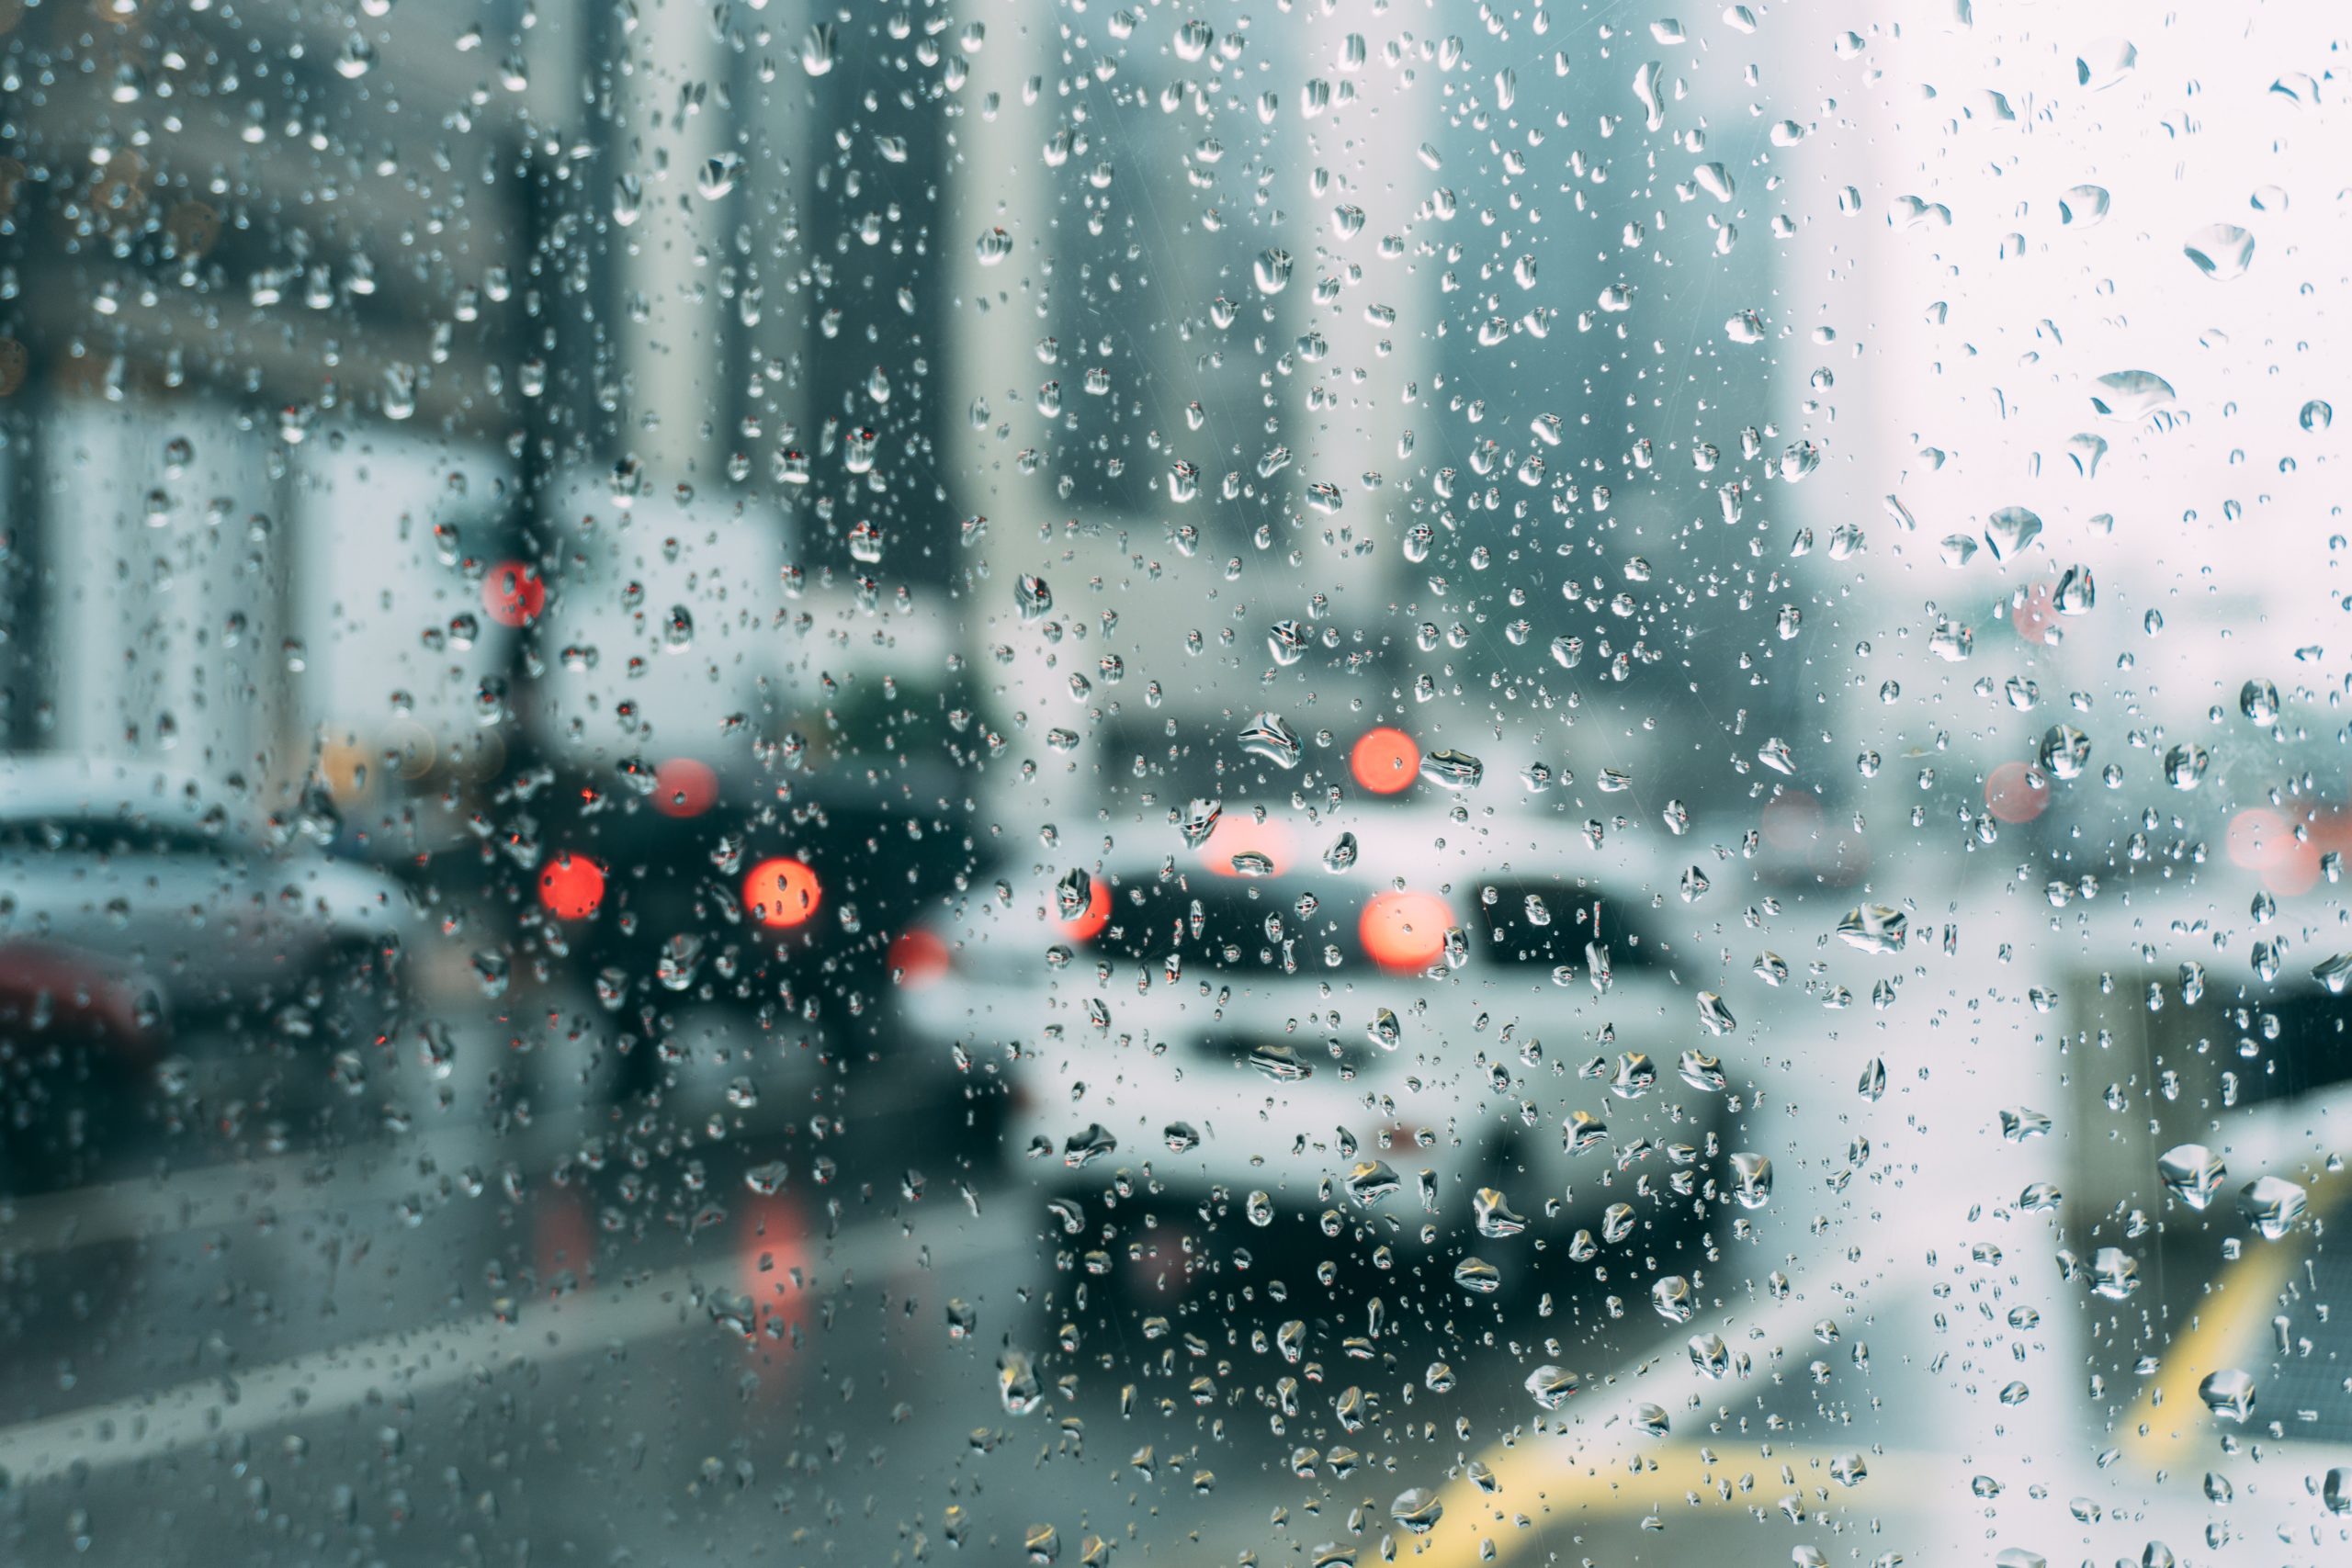 Vidro molhado da chuva enquanto carros andam na rua.